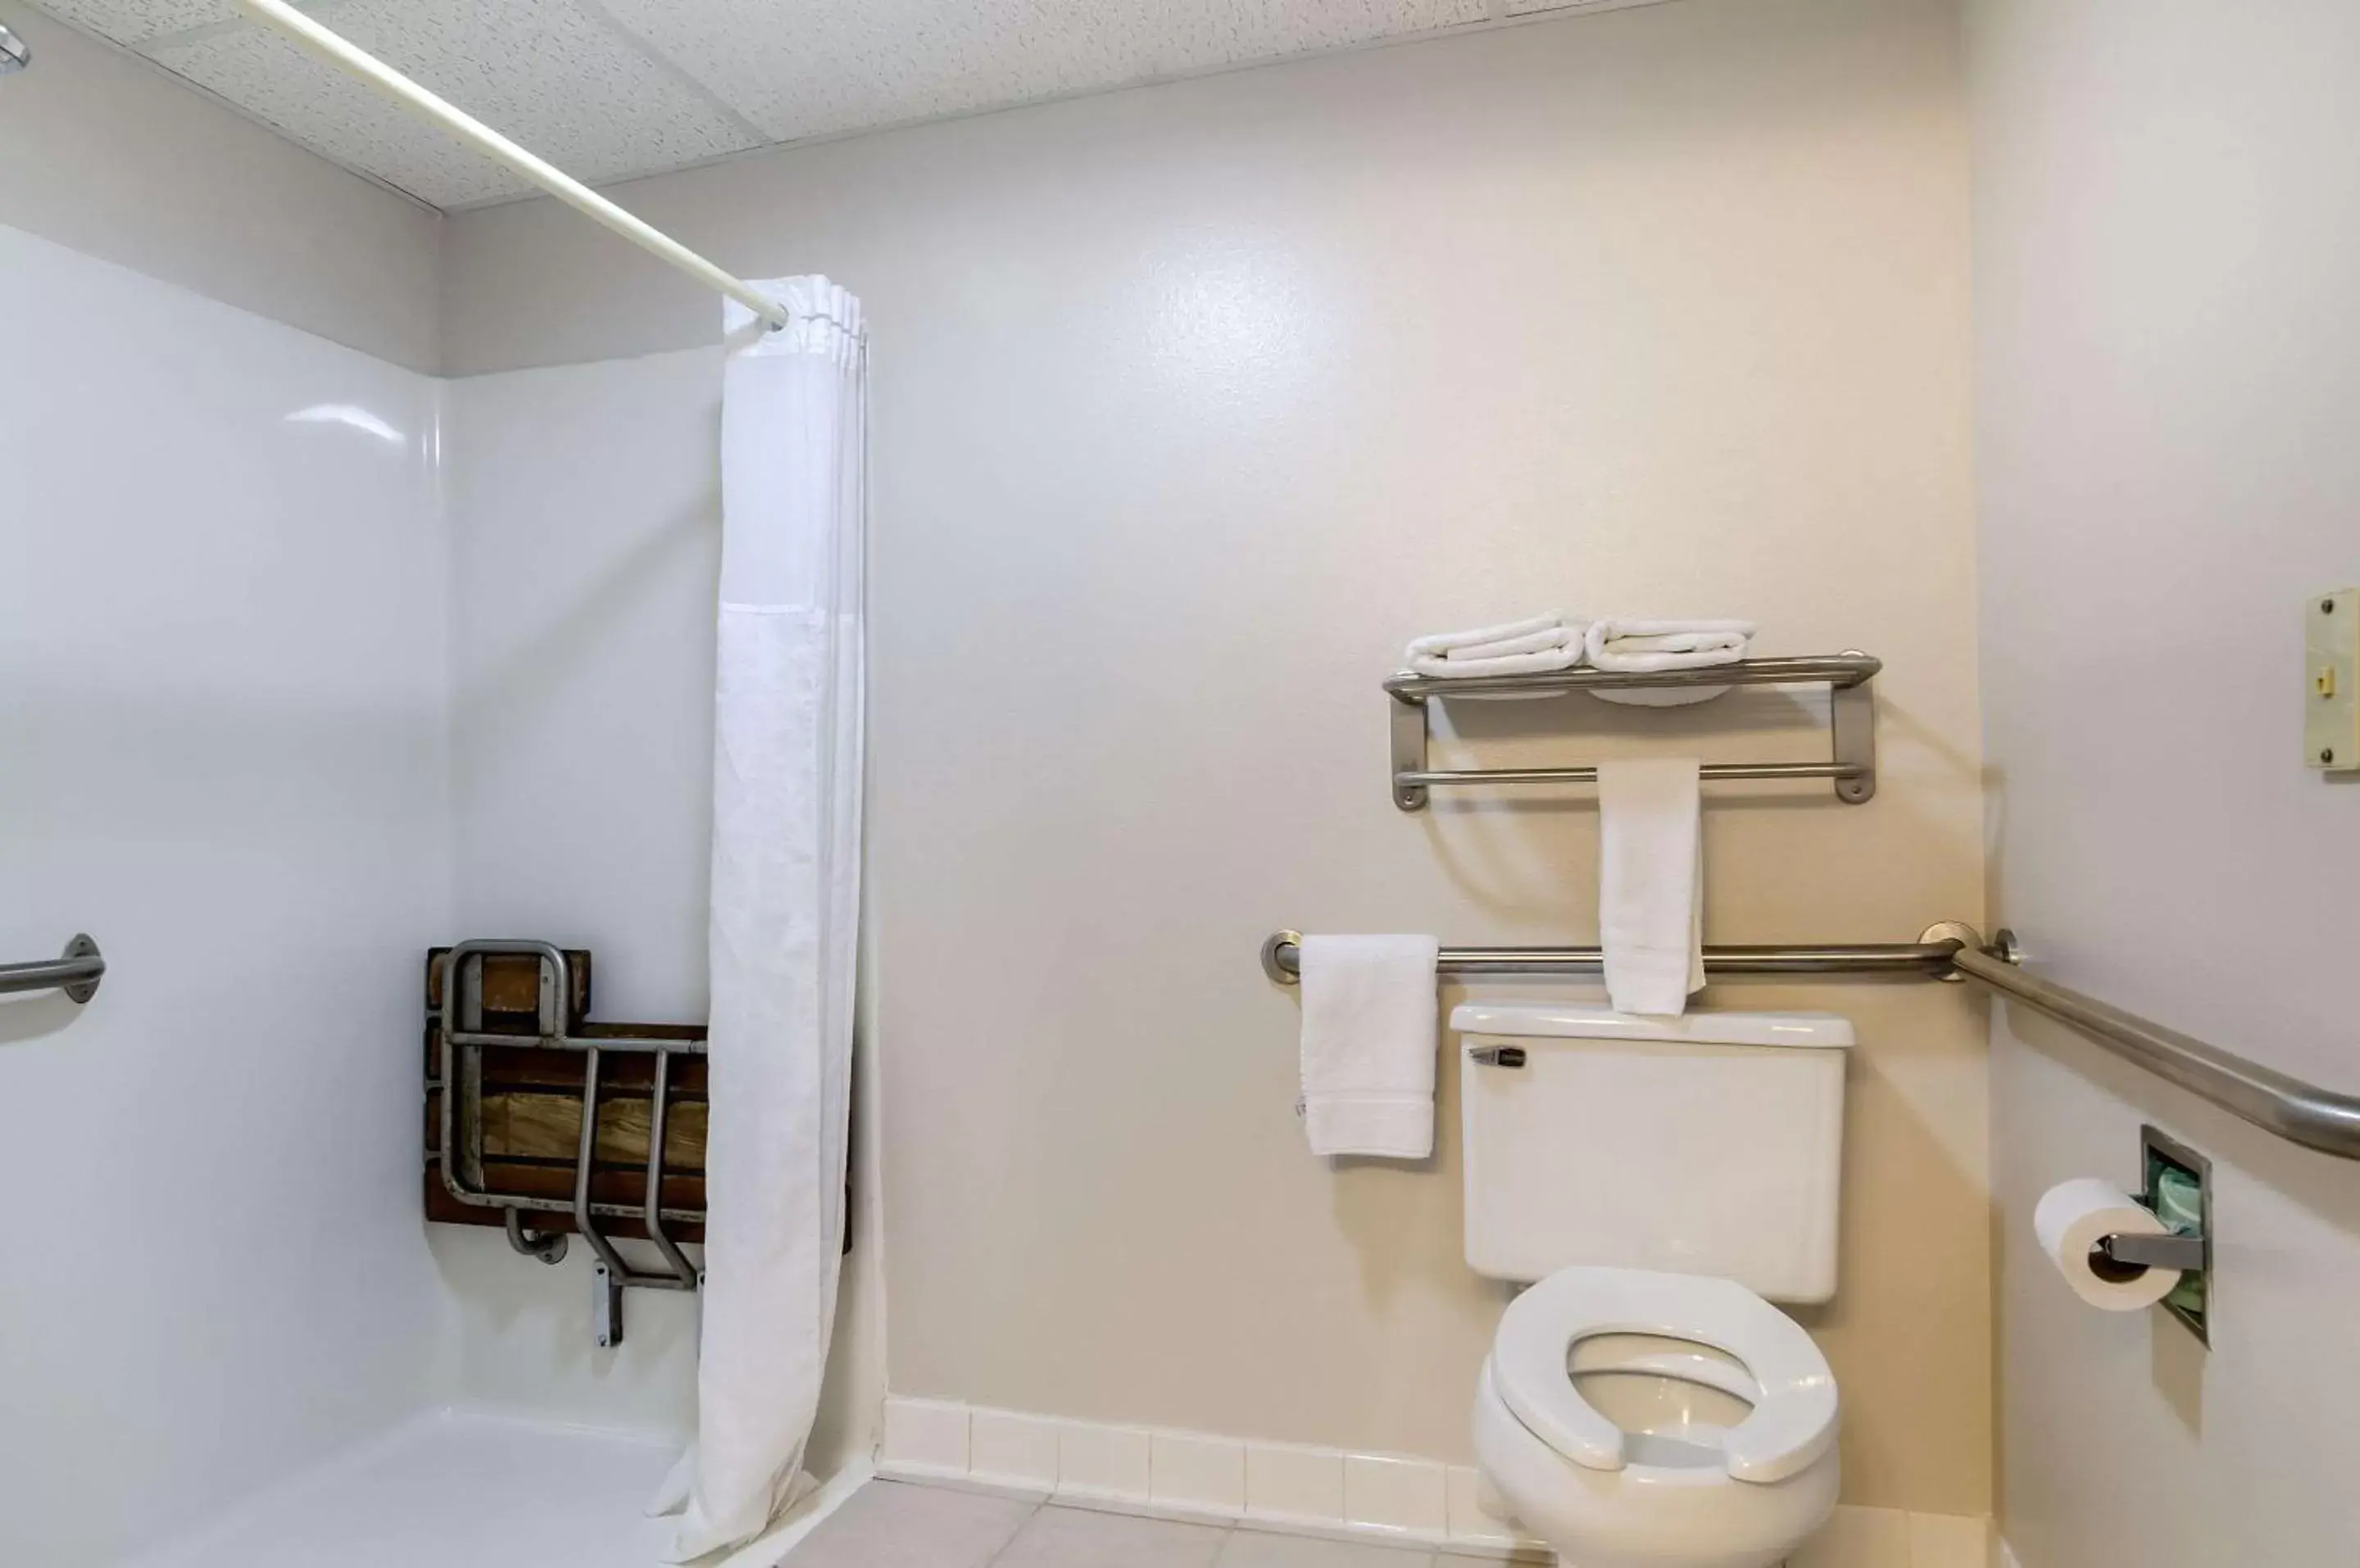 Photo of the whole room, Bathroom in Quality Inn Osceola